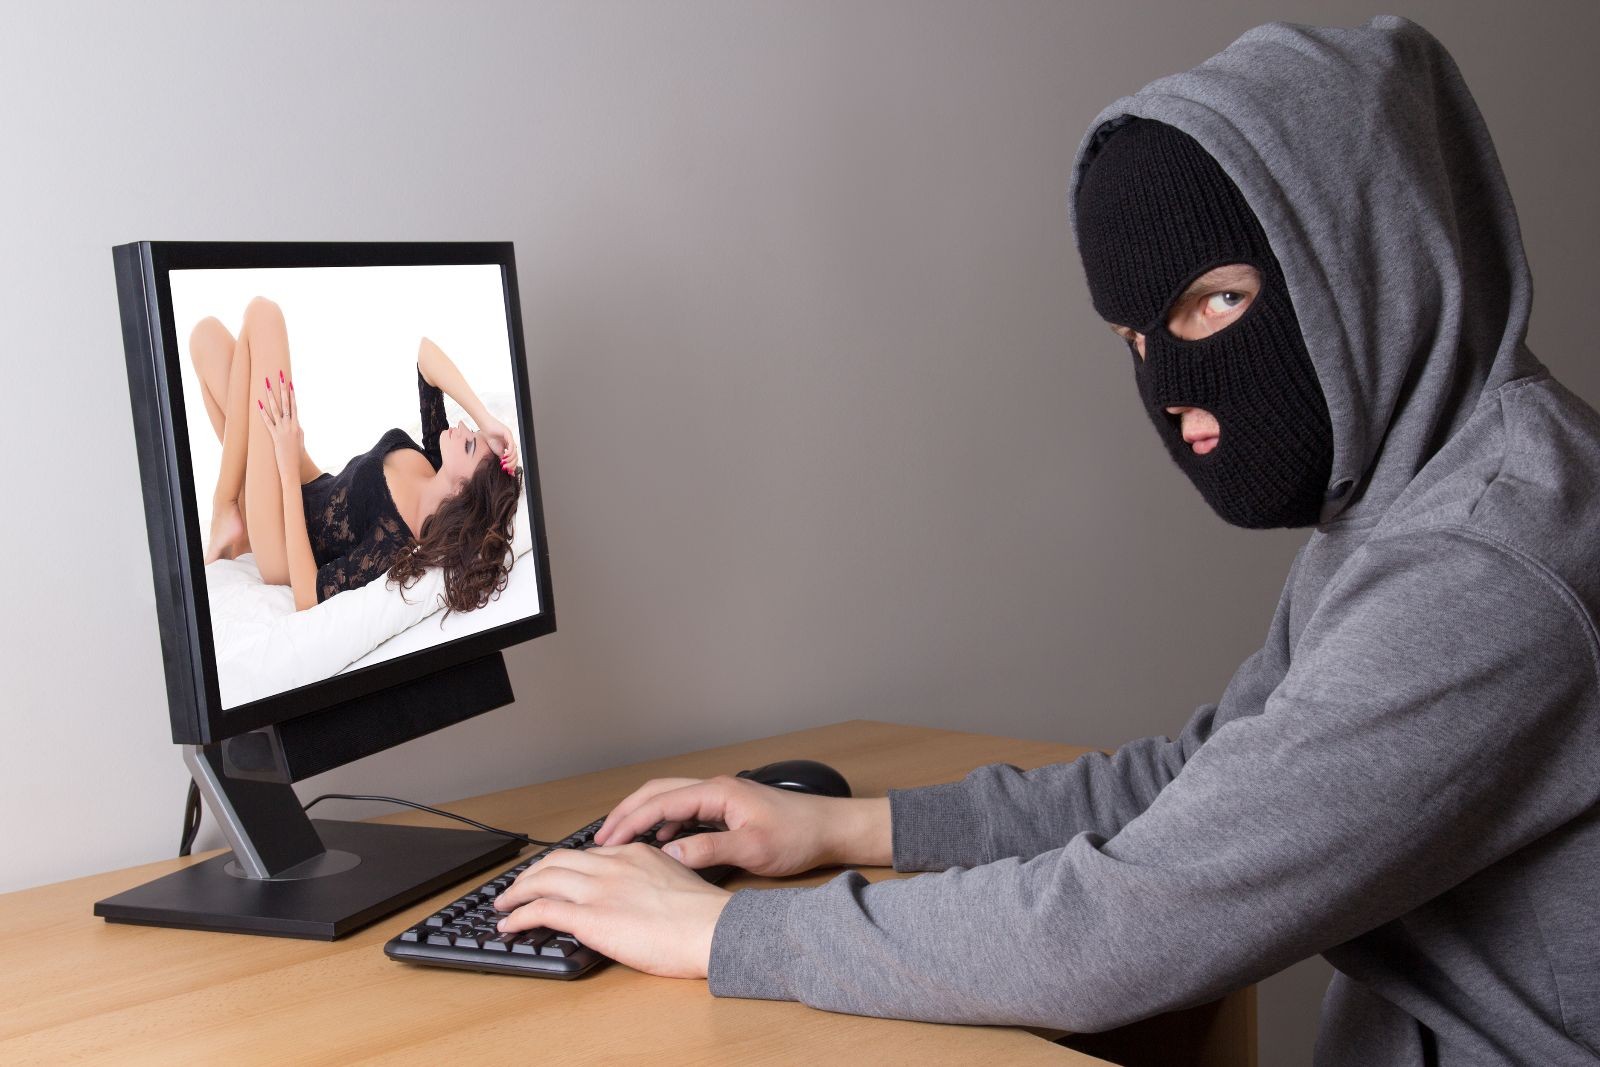 Hombre con mascara observando una pantalla de computadora con una imagen intima